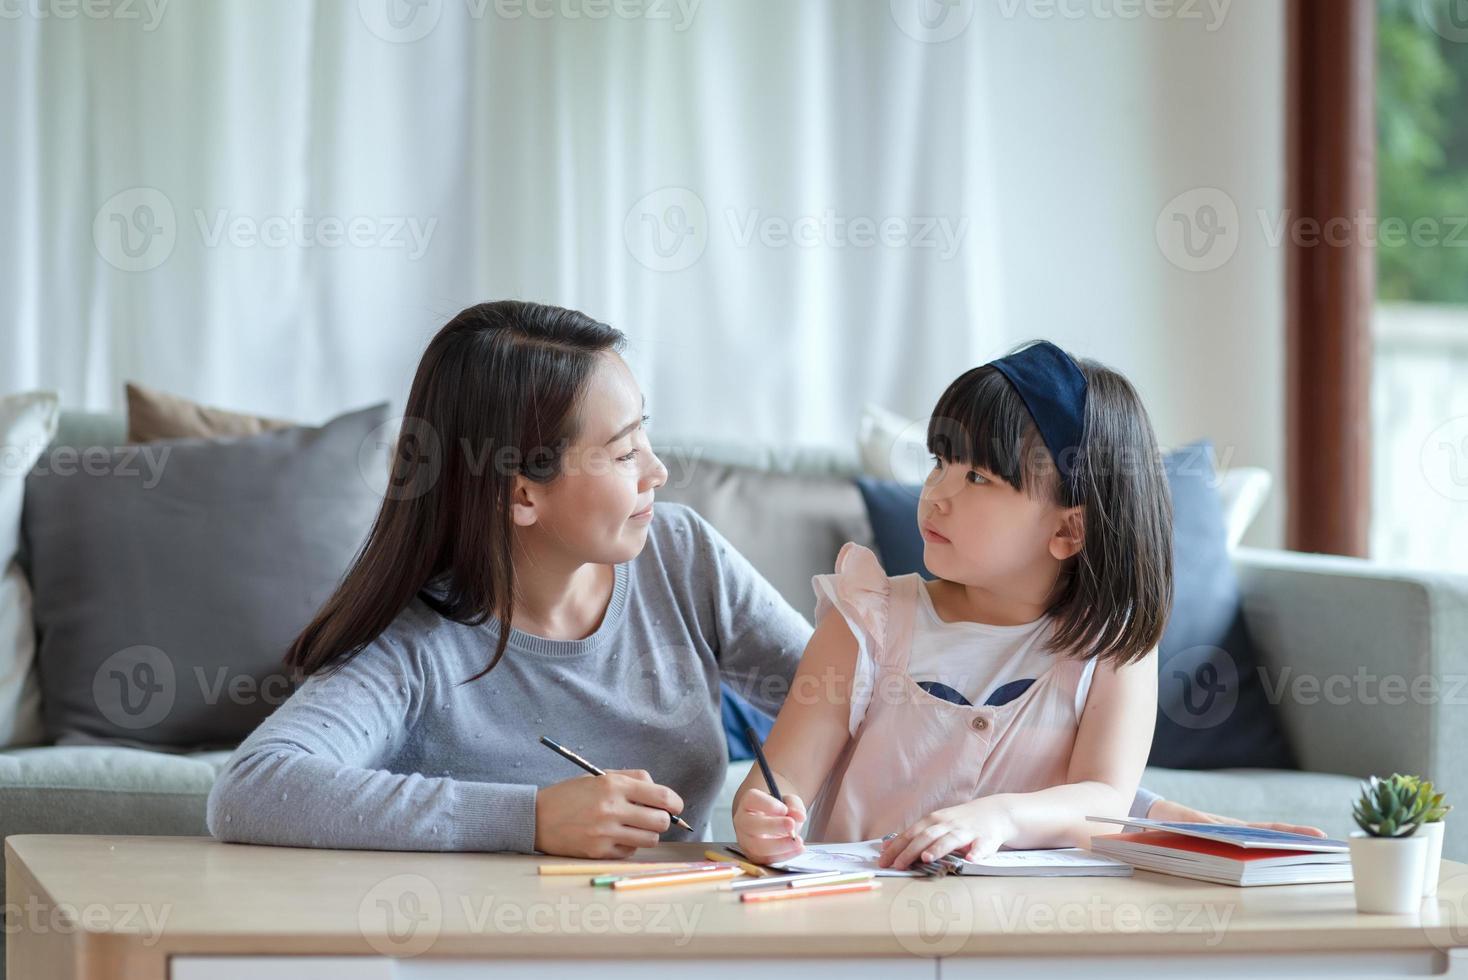 Asiatische Mutter, die ihrer süßen Tochter das Lernen im Wohnzimmer beibringt foto